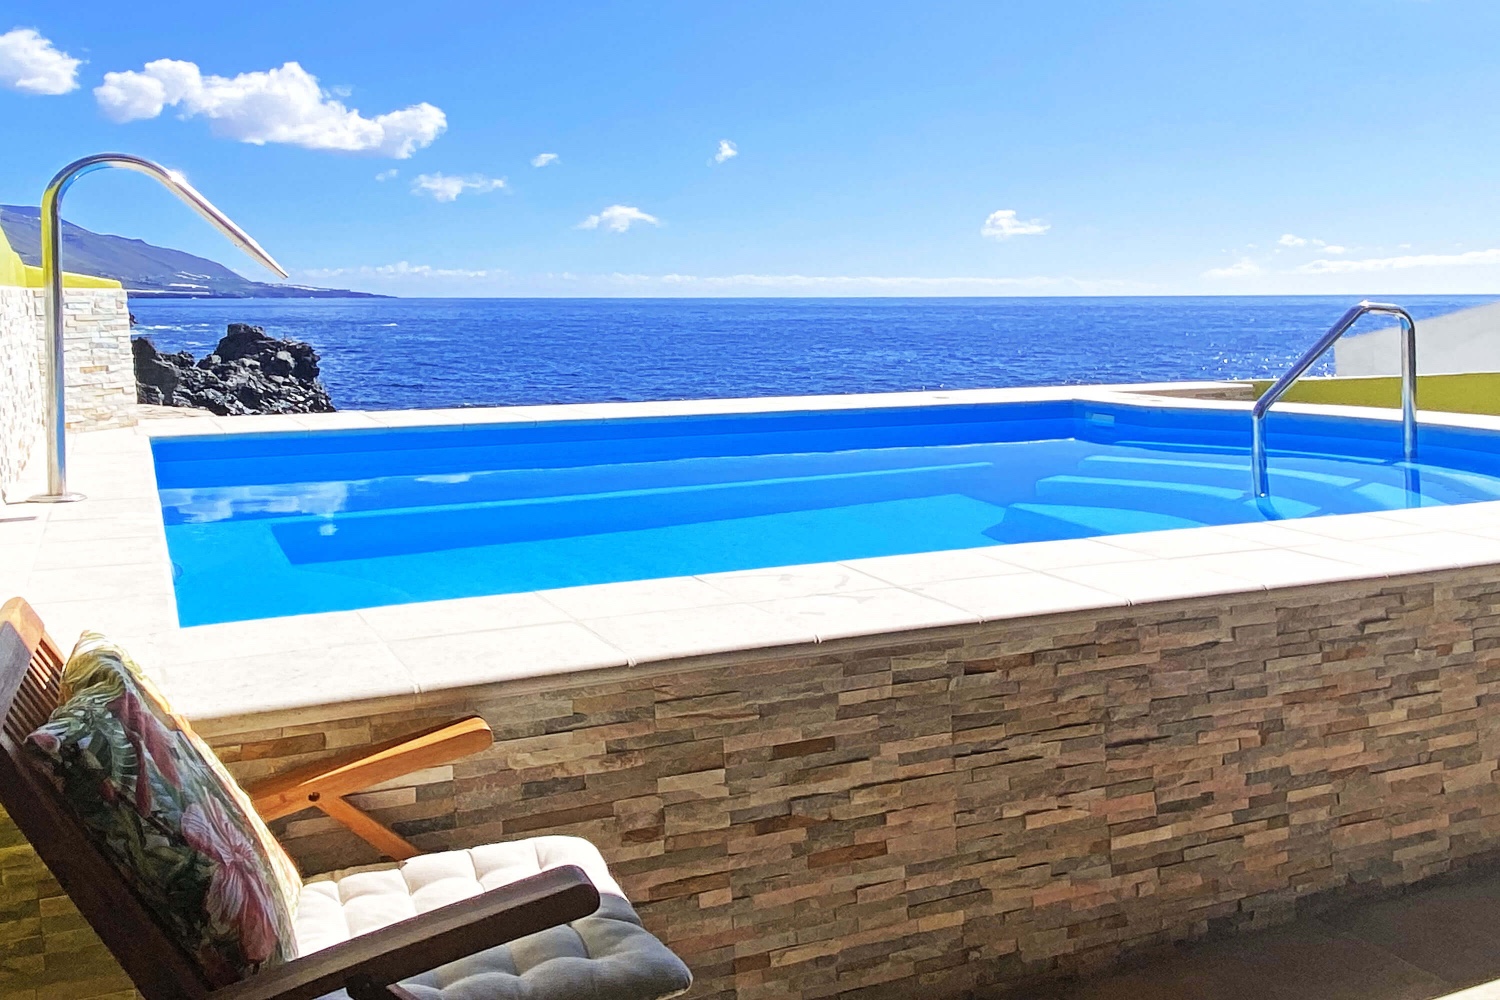 Bonita casa situada a orillas del Atlántico, con vistas panorámicas al mar desde la piscina y a tan solo 500 m de la playa.